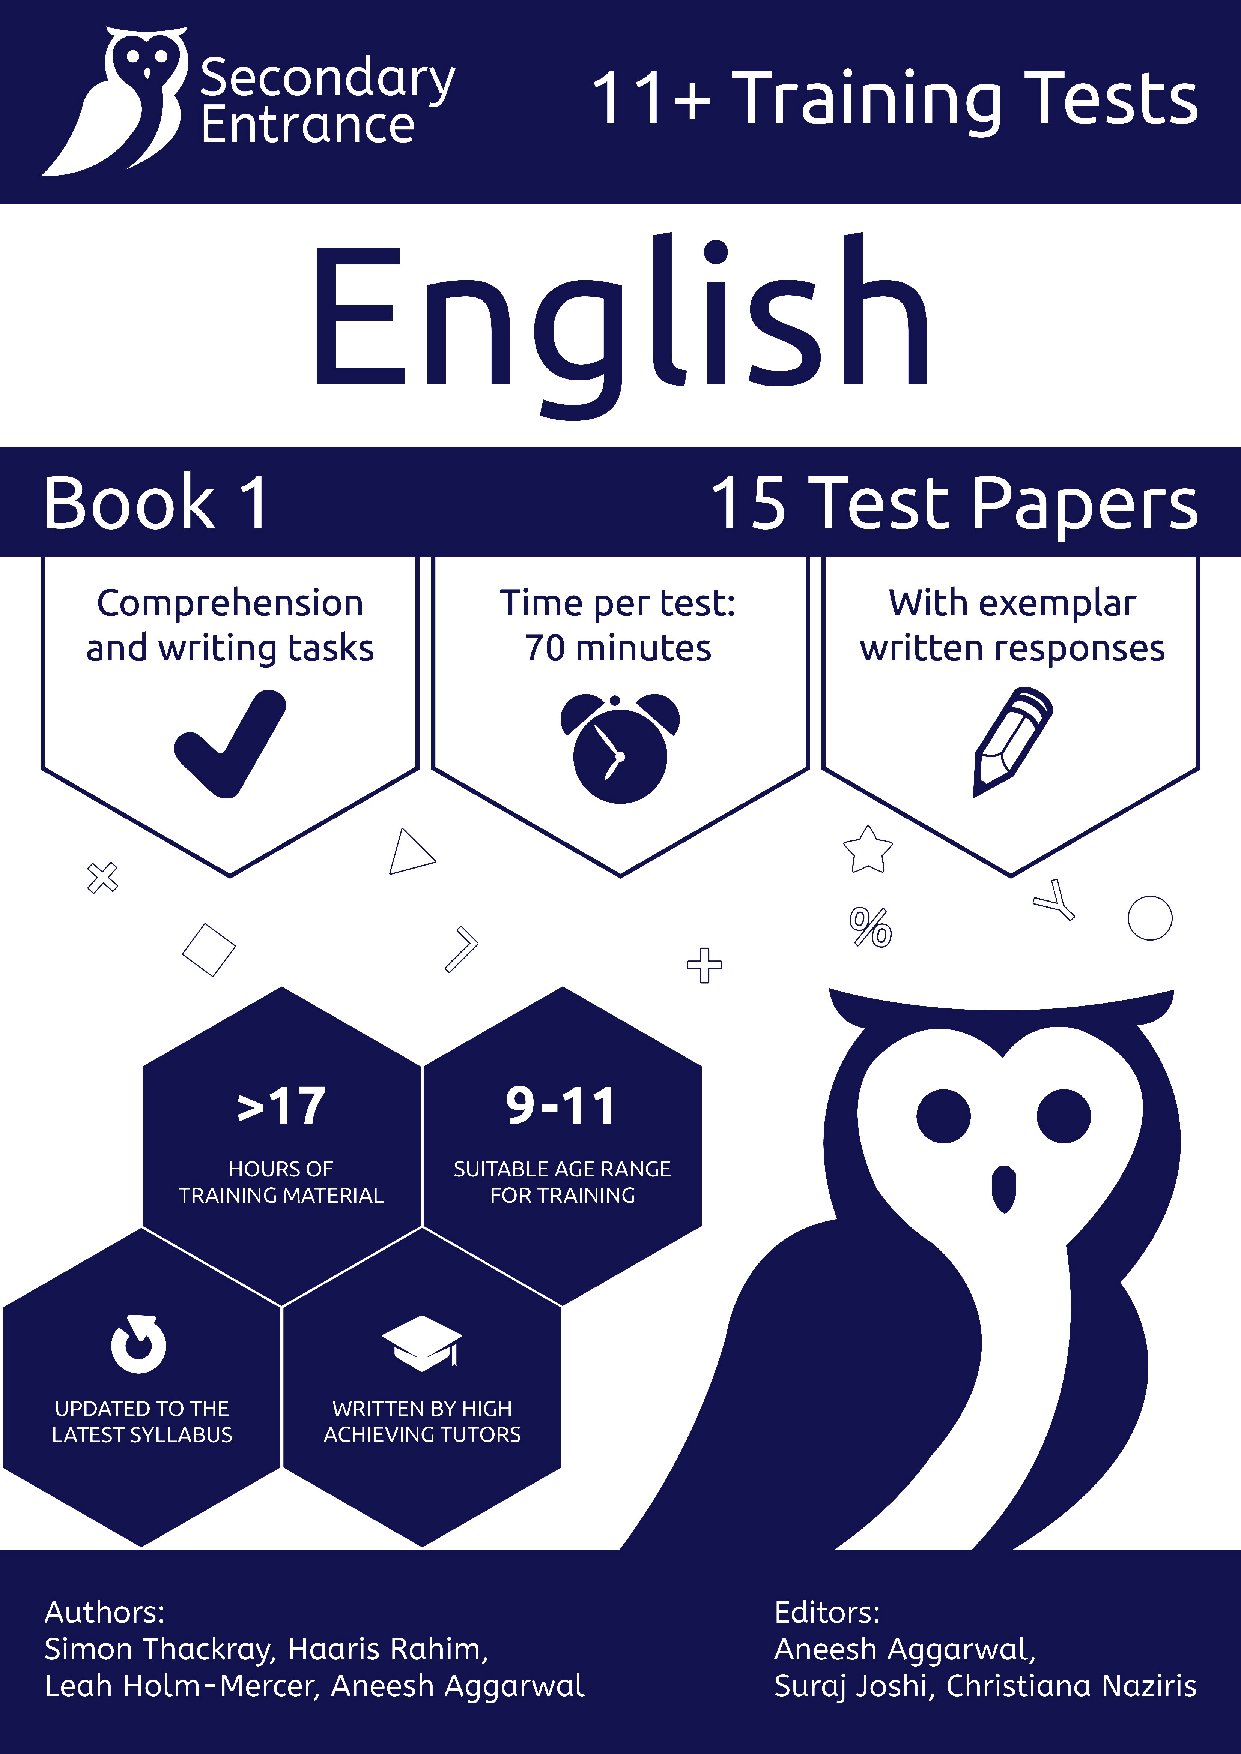 11+ English syllabus